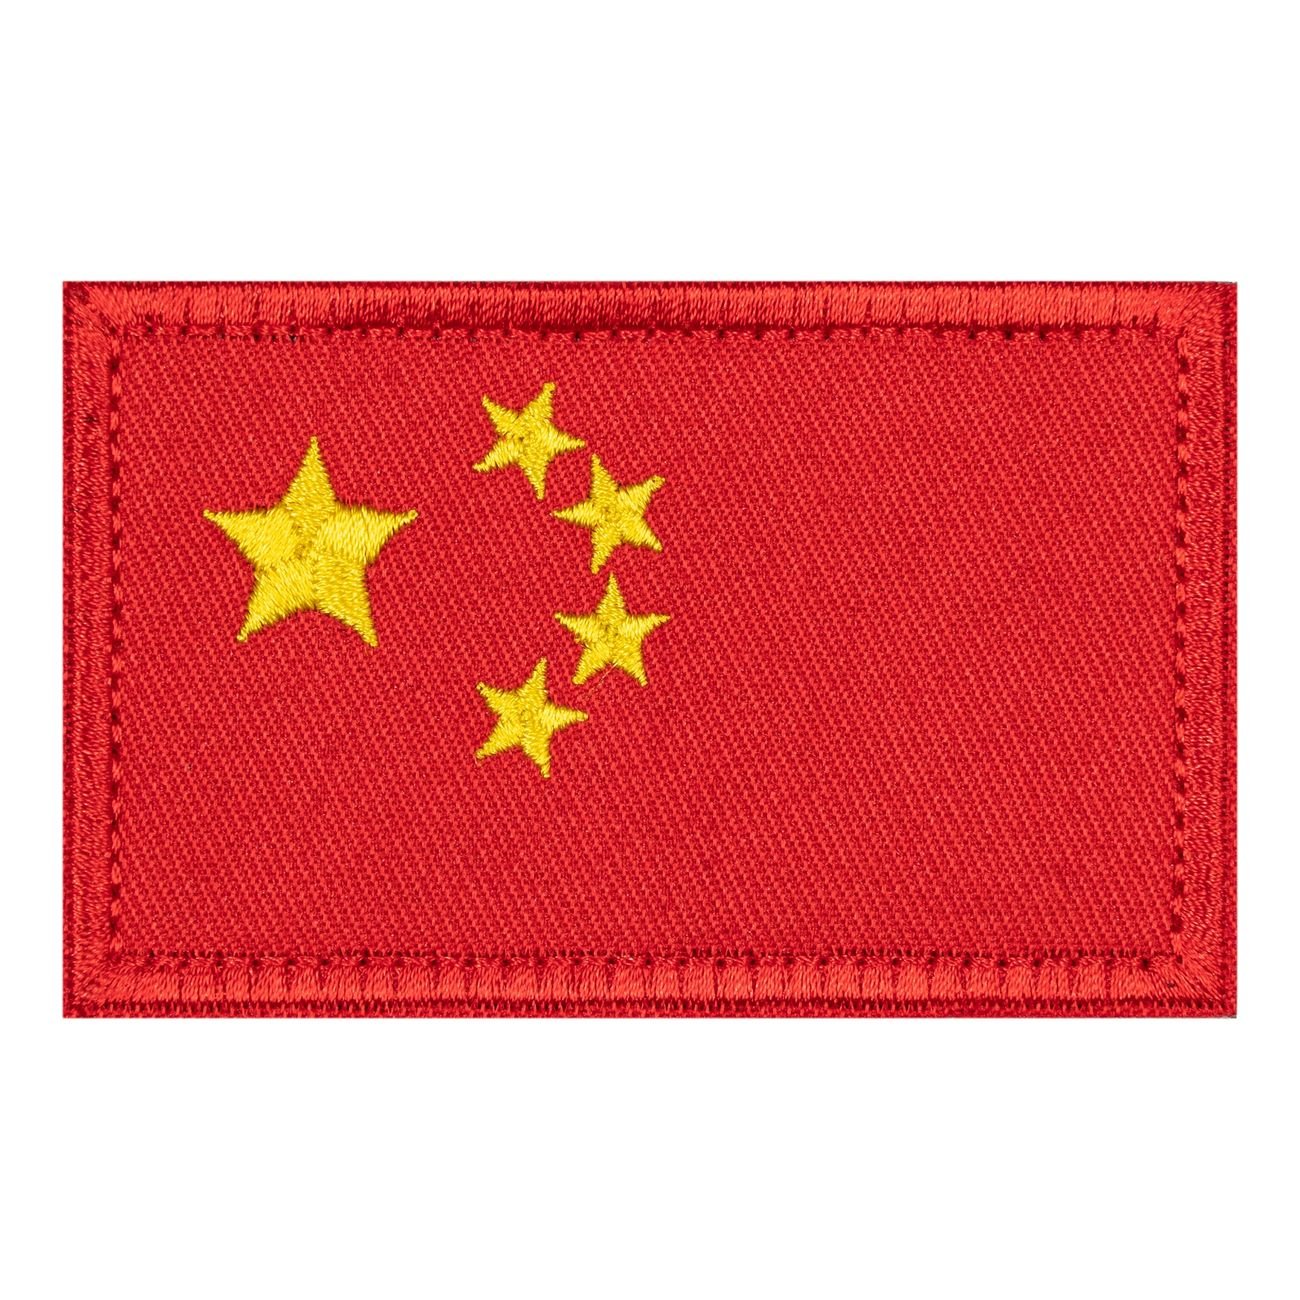 tygmarke-kinesiska-flaggan-92022-1